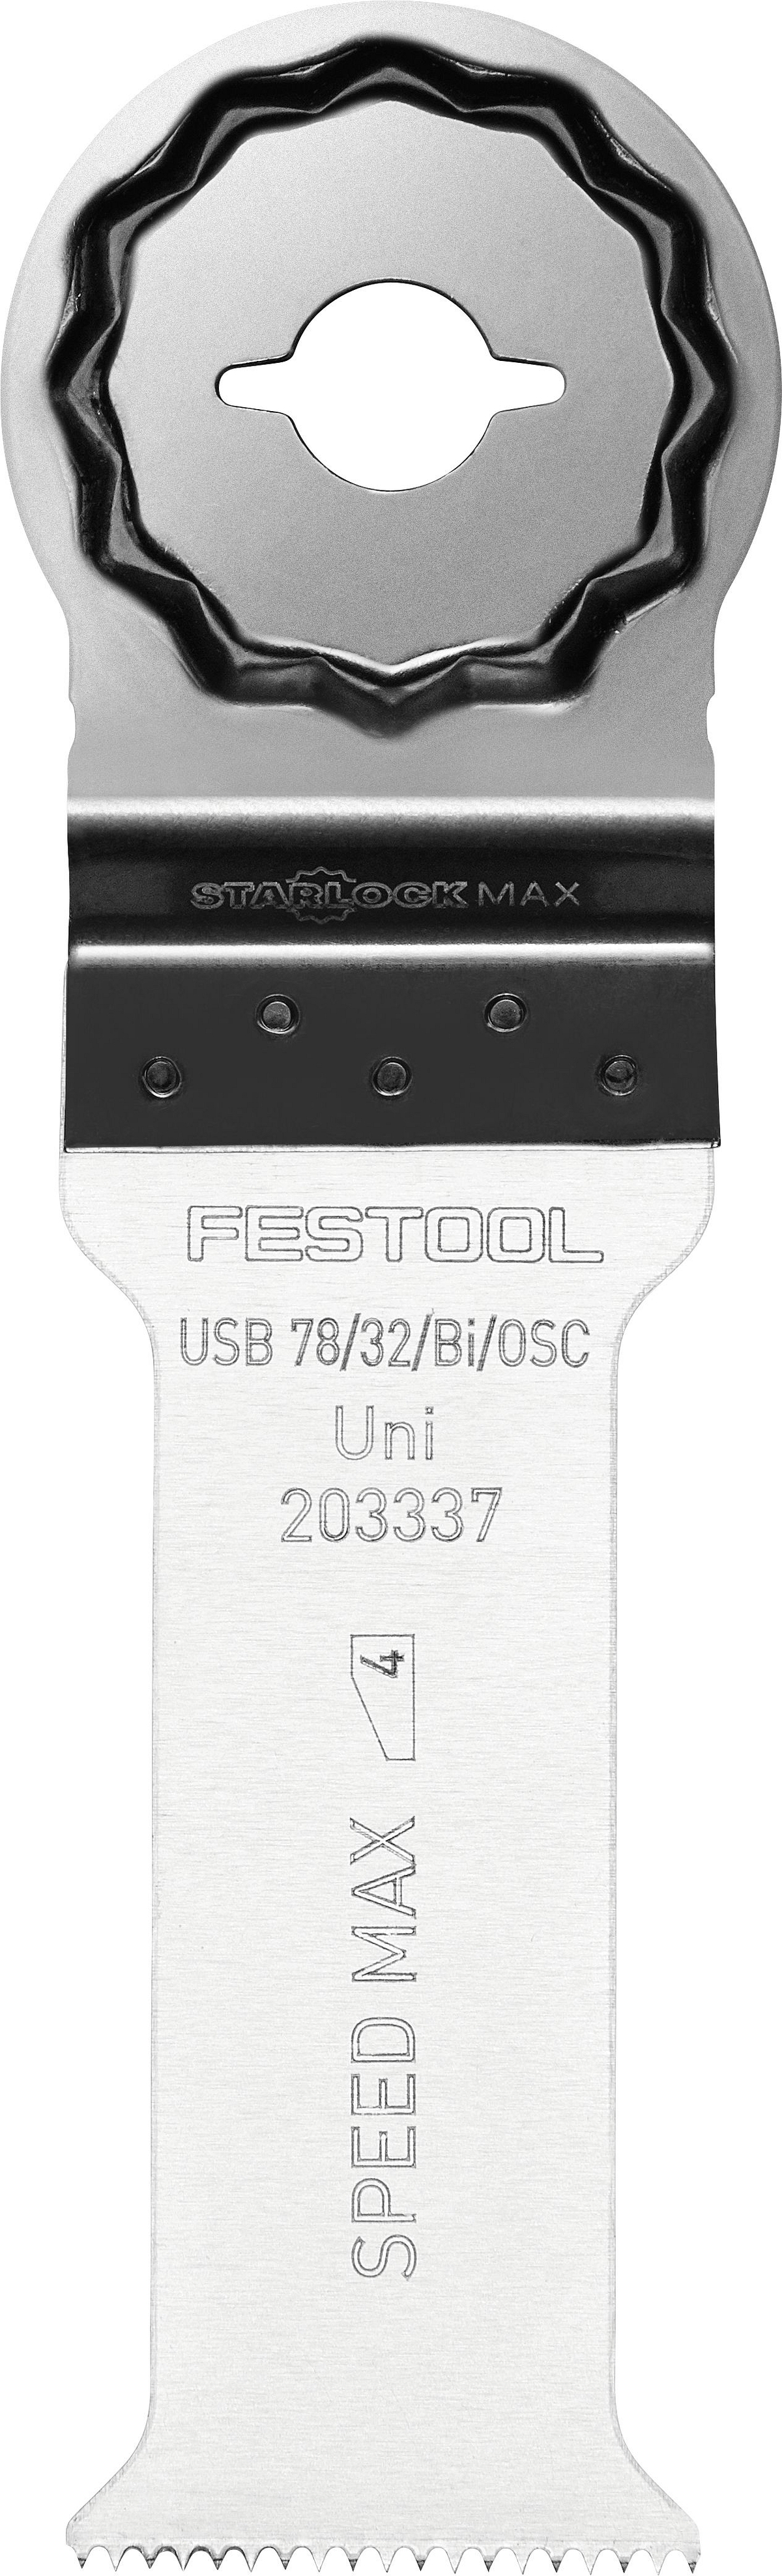 Festool Tifsagarblað USB 78/32/Bi/5 203337